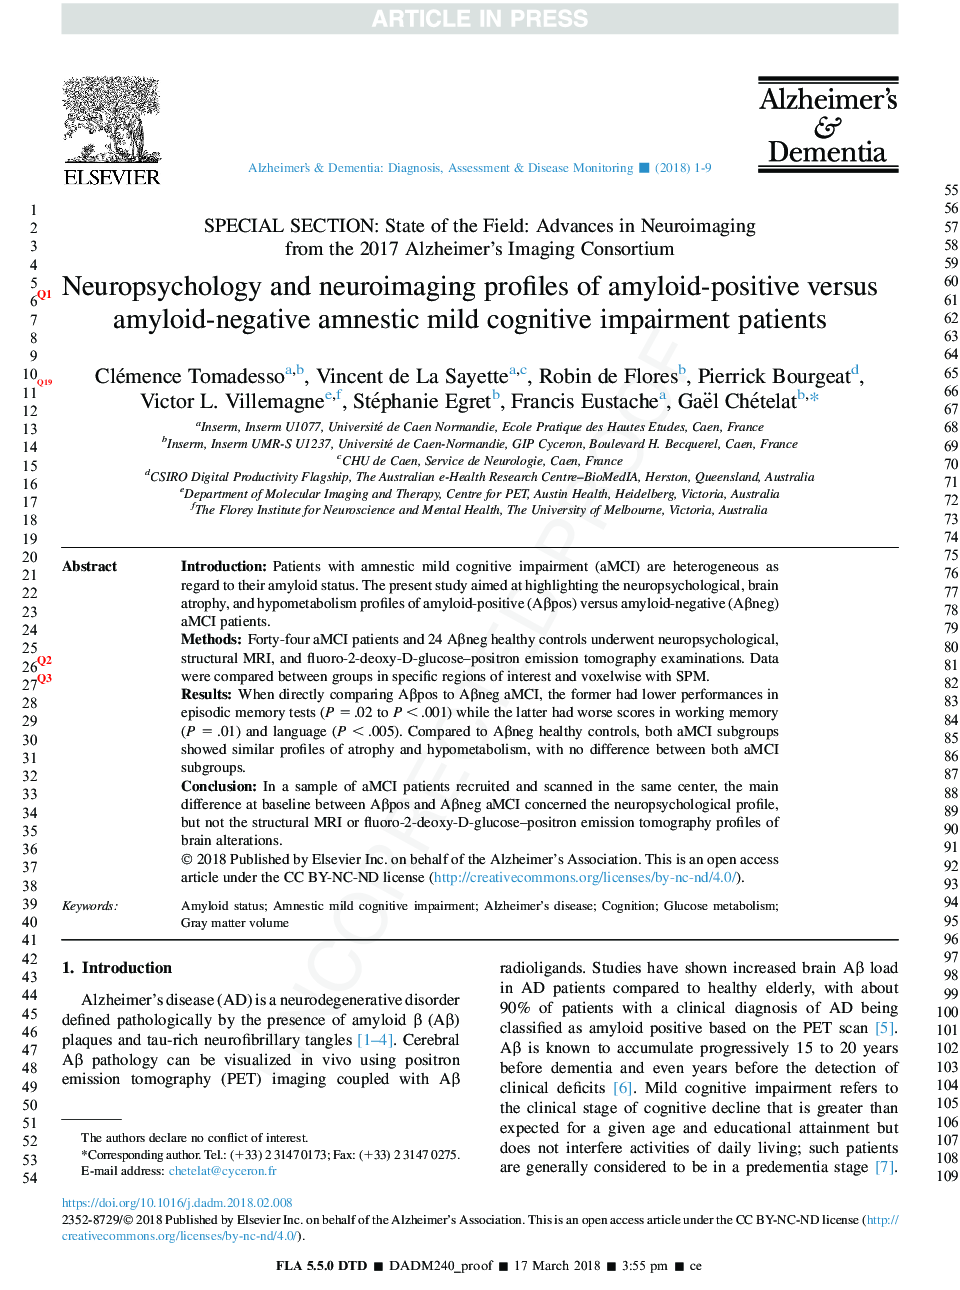 Neuropsychology and neuroimaging profiles of amyloid-positive versus amyloid-negative amnestic mild cognitive impairment patients